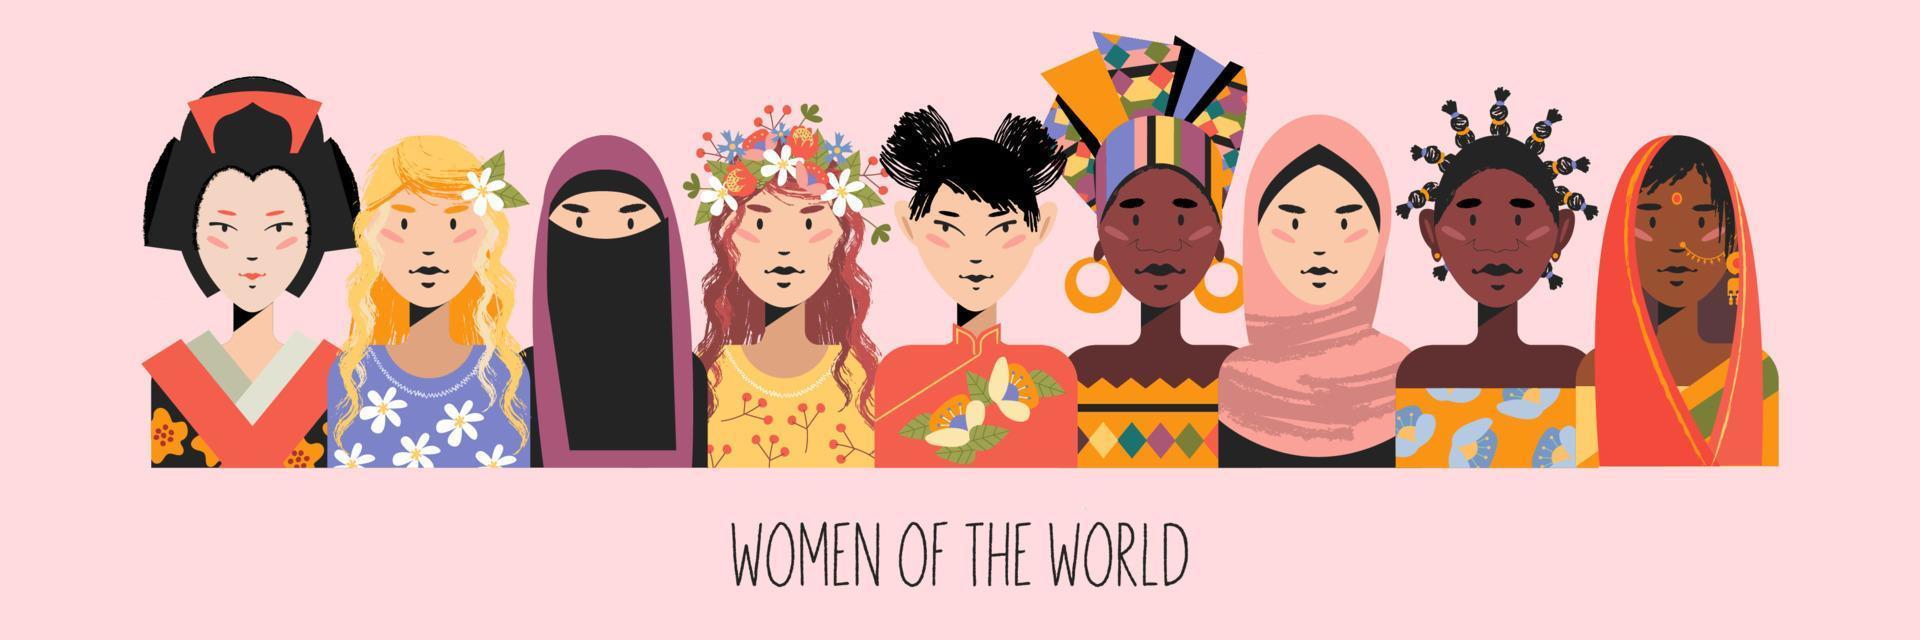 mulheres de todo o mundo. mulheres em trajes tradicionais. ilustração vetorial. vetor